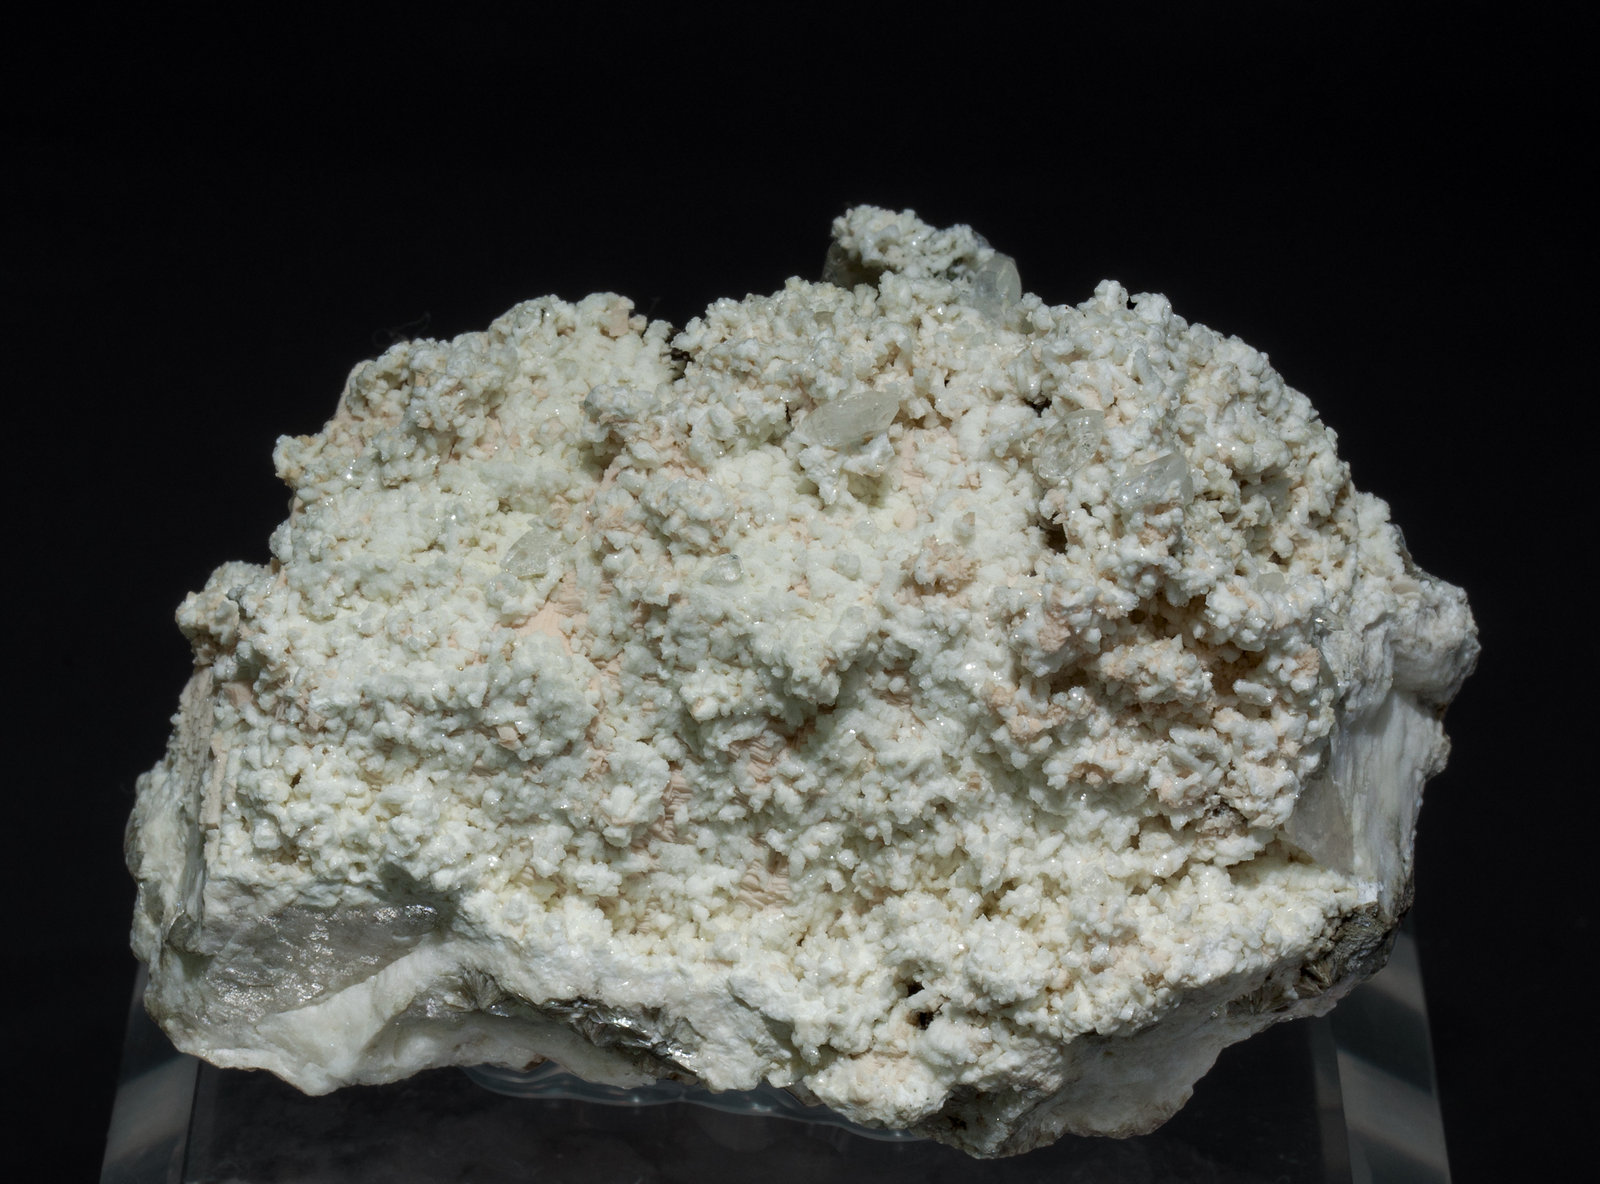 specimens/s_imagesZ5/Stokesite-NL68Z5f.jpg